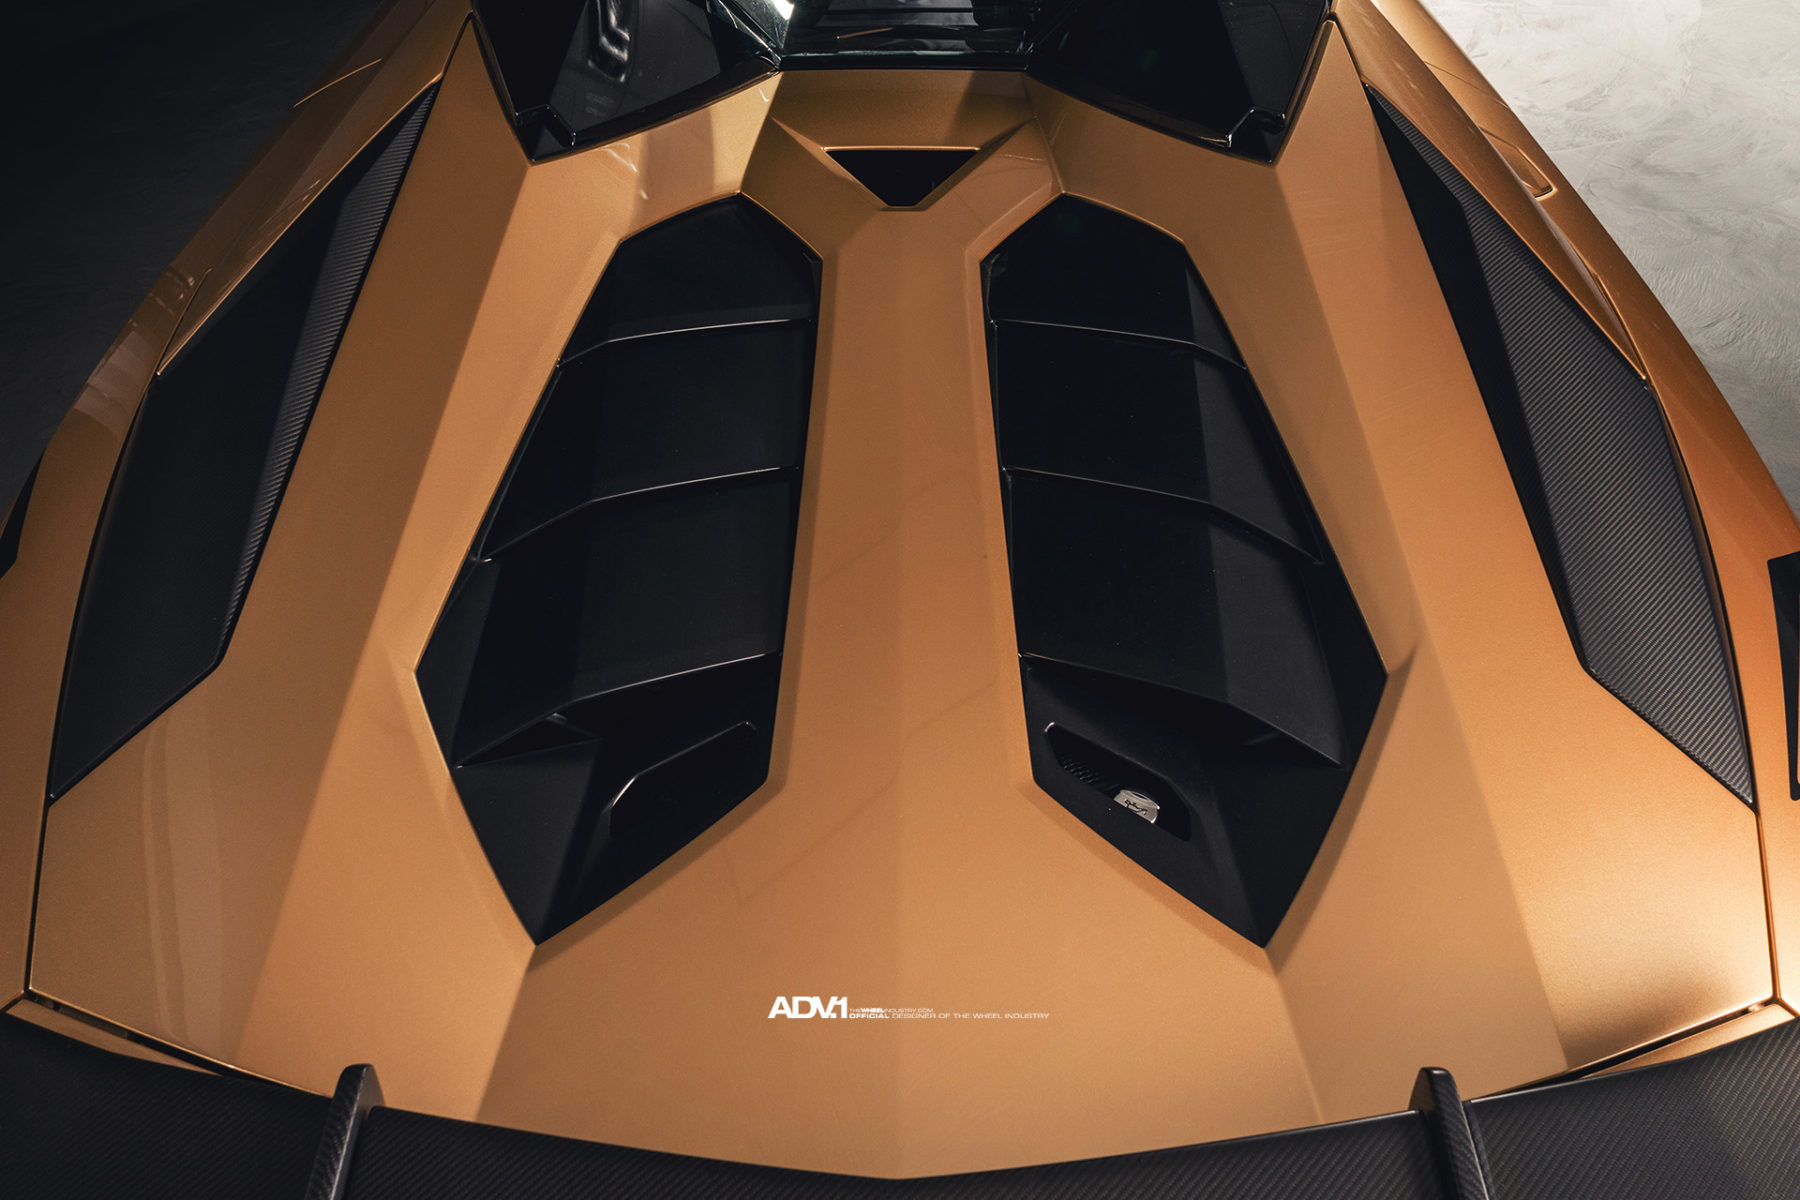 Ngam-Lamborghini-Aventador-SV-Roadster-trong-bo-canh-vang-dong-cuc-chat-anh-14